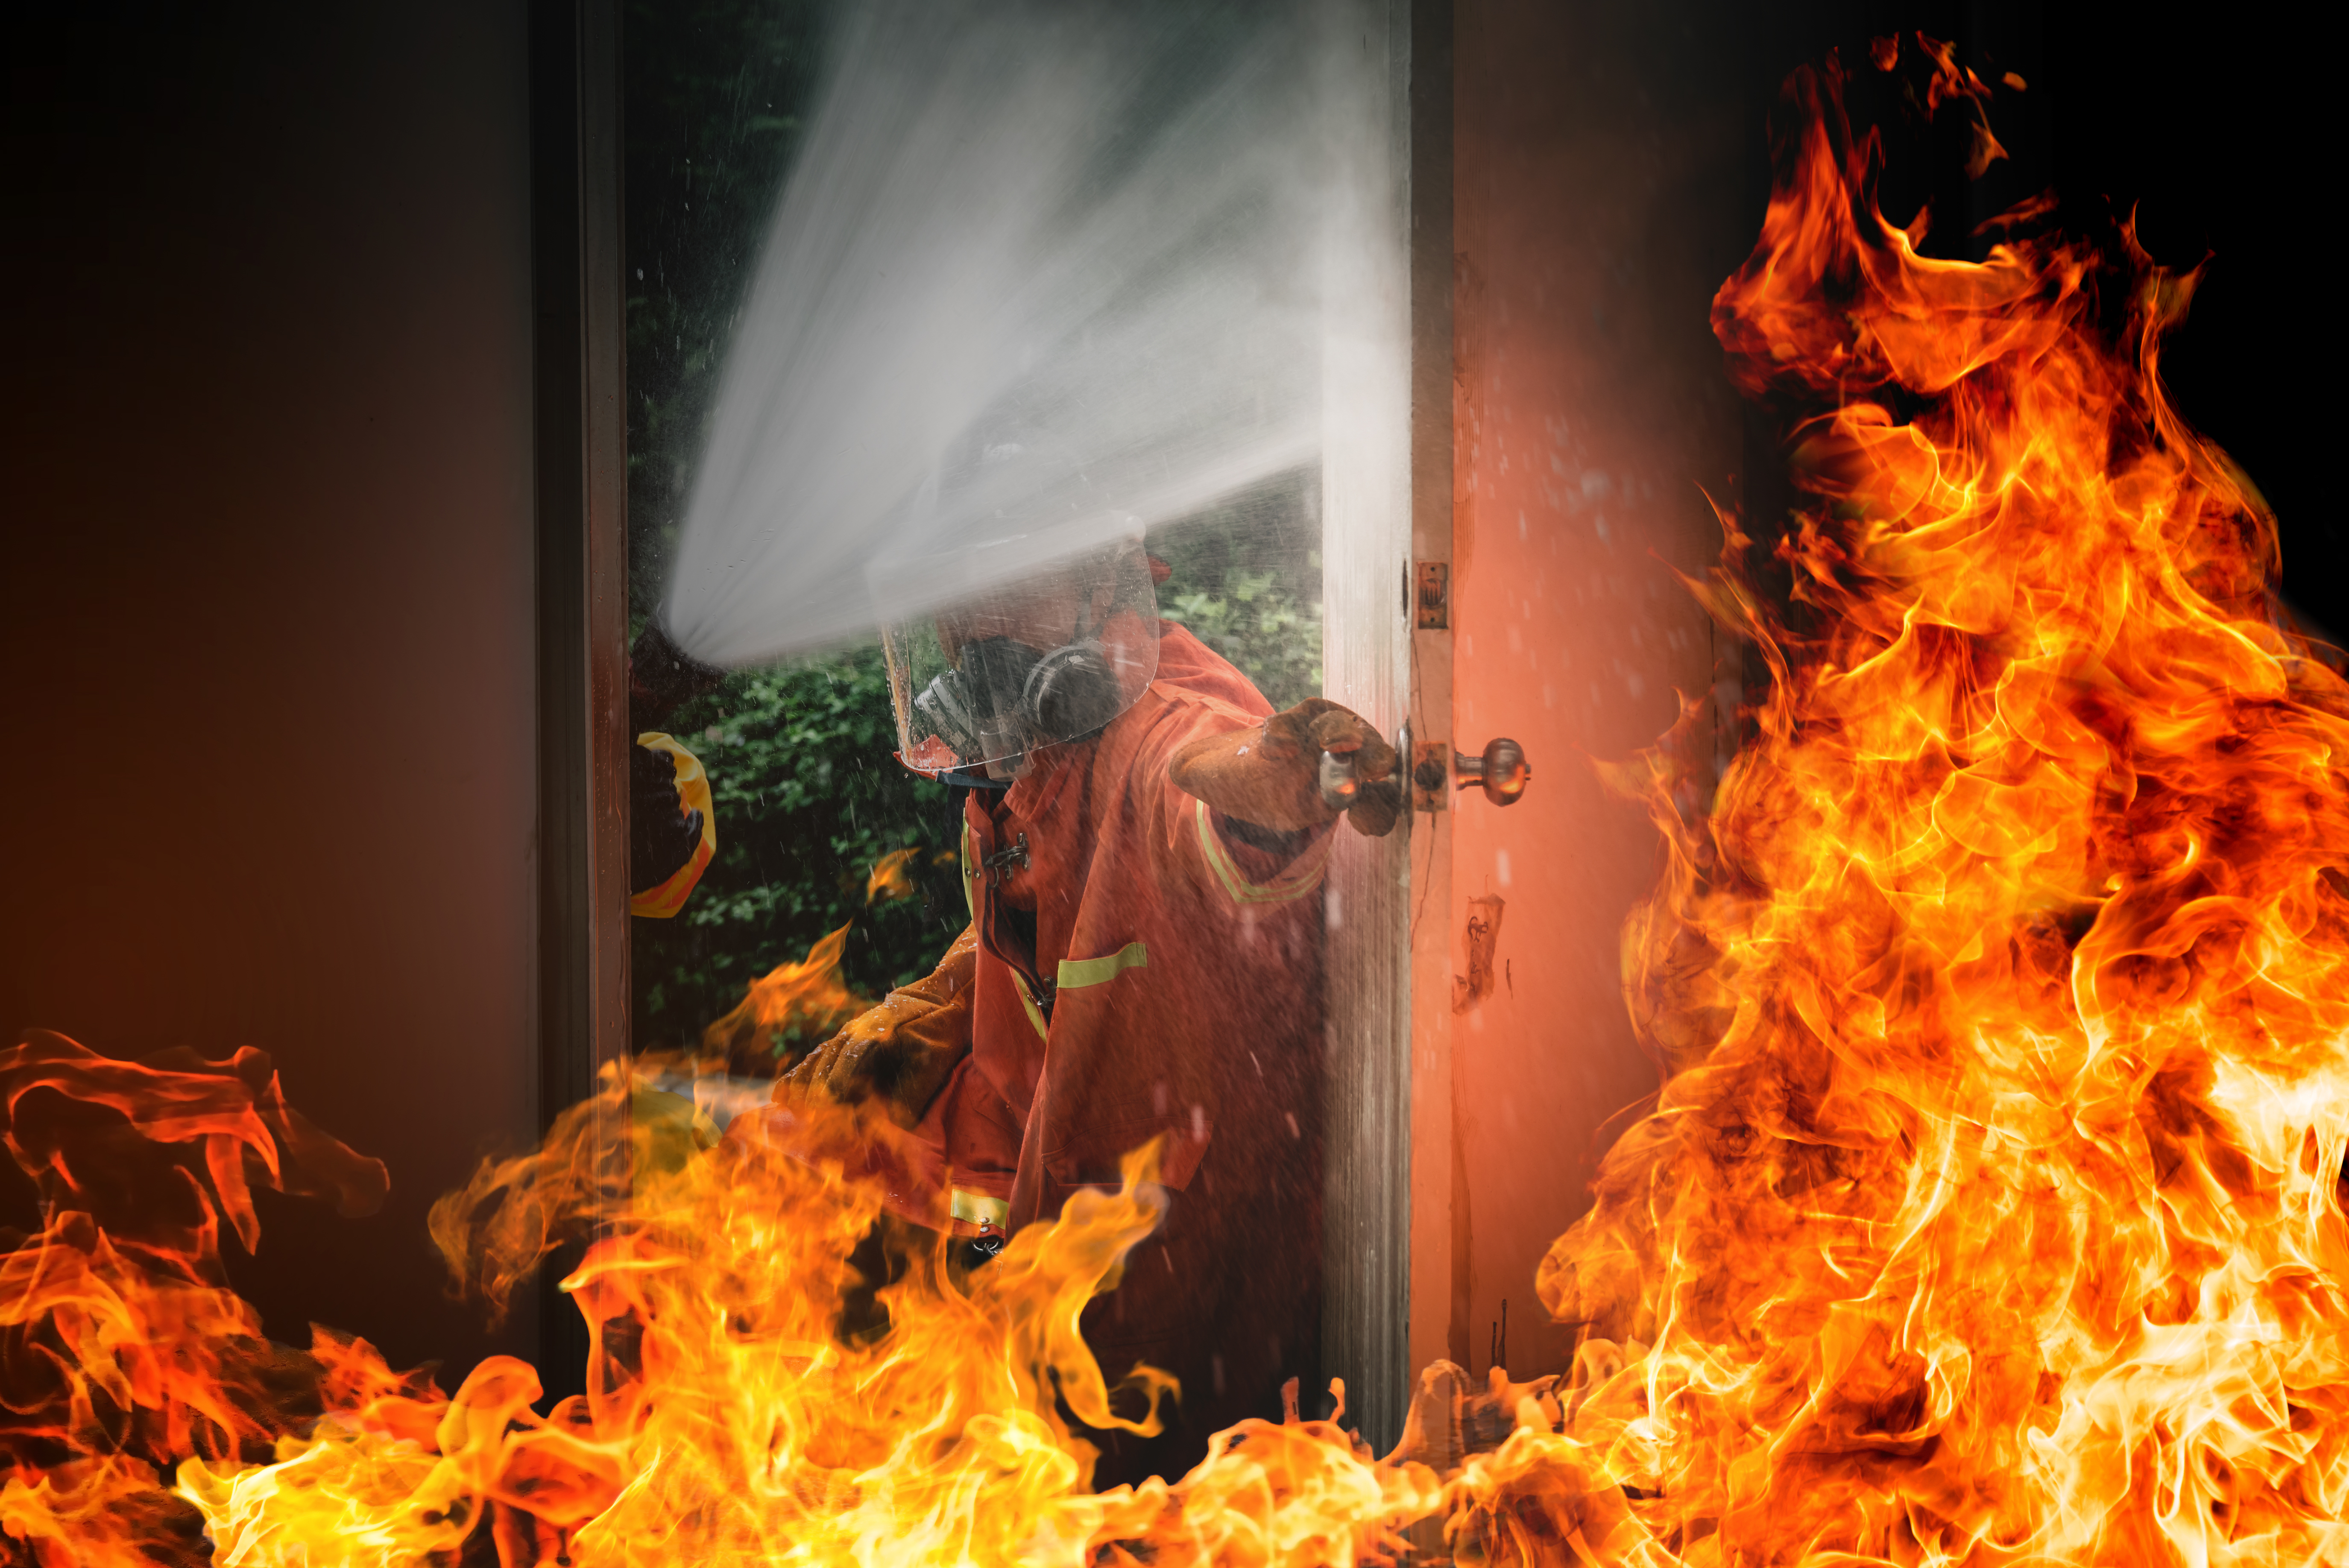 Un pompier qui tente d'éteindre les flammes. À des fins d'illustration uniquement | Source : Freepik